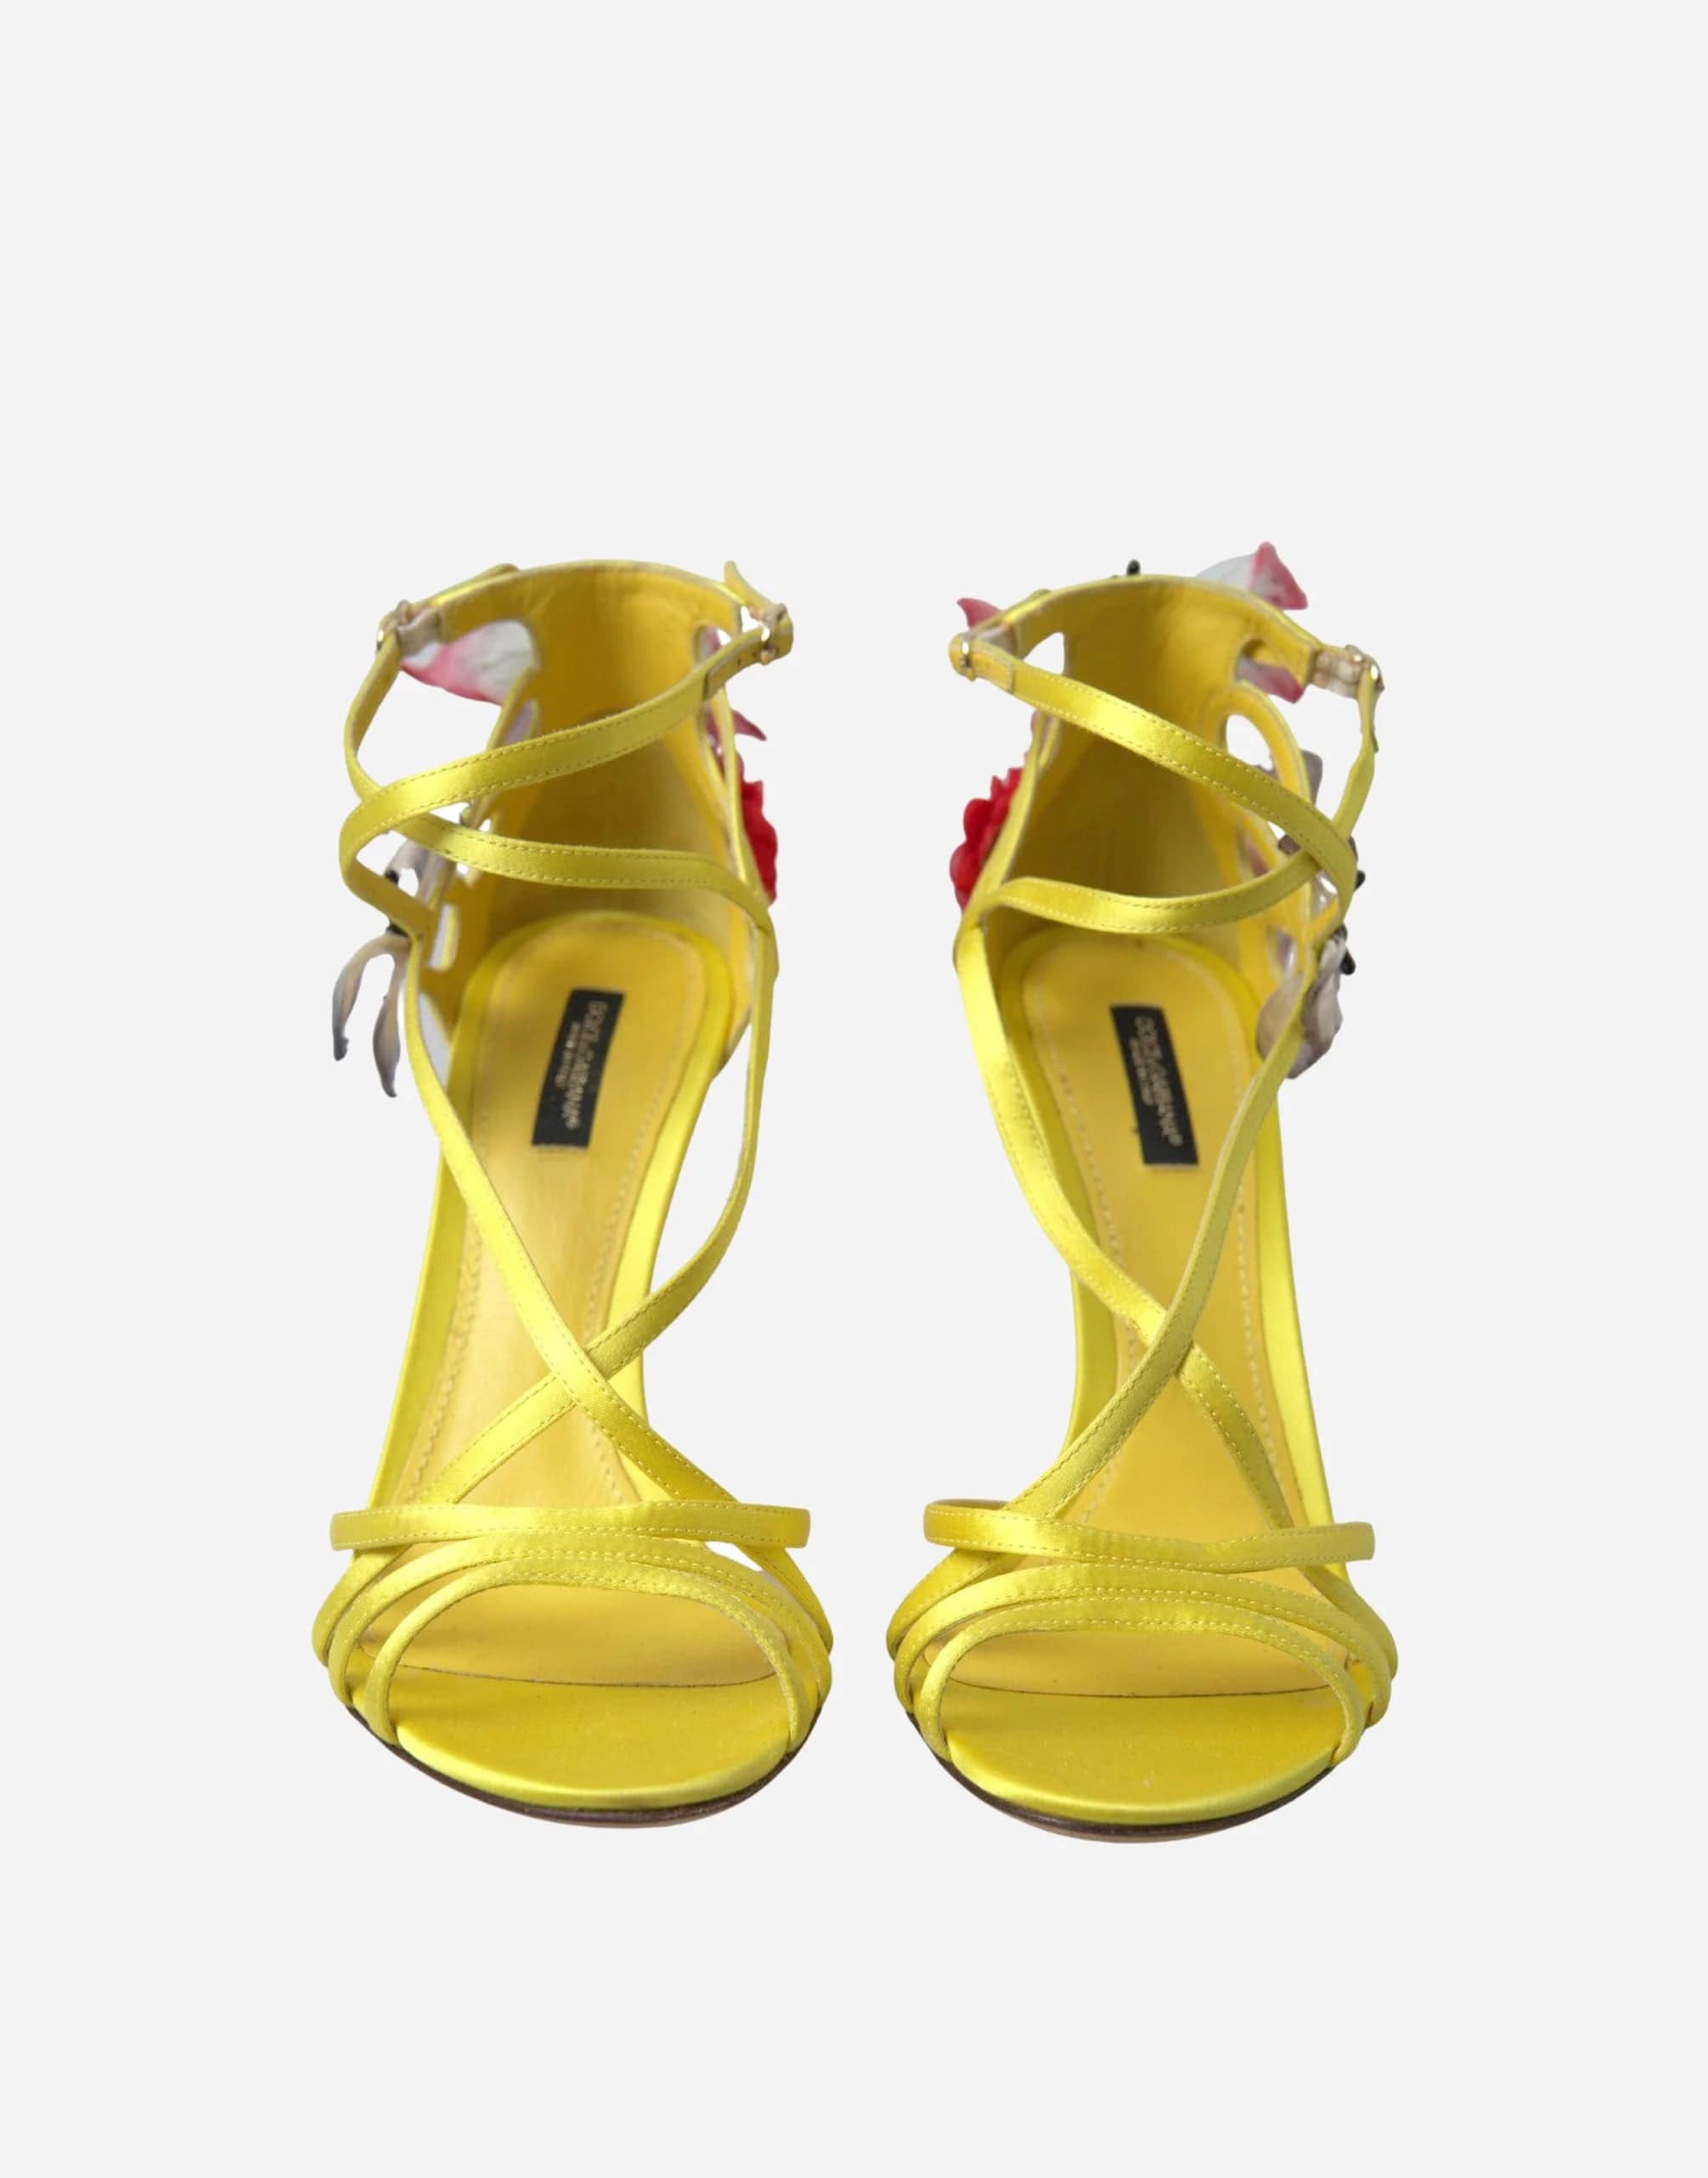 Dolce & Gabbana Keira Butterfly Appliqués Sandals